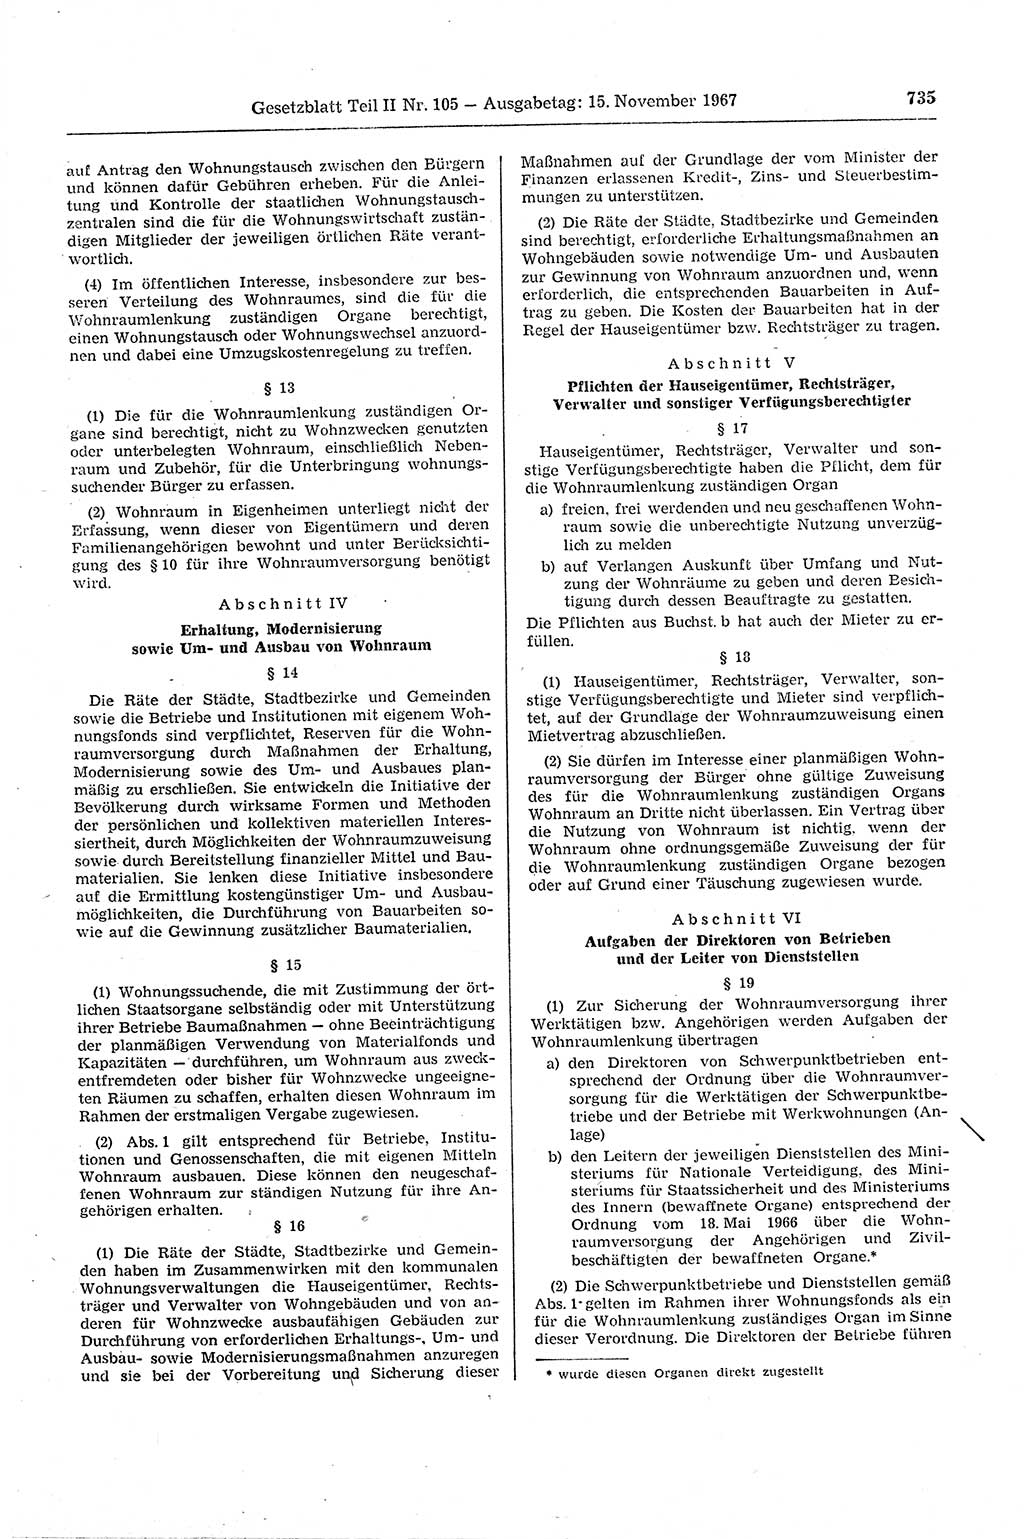 Gesetzblatt (GBl.) der Deutschen Demokratischen Republik (DDR) Teil ⅠⅠ 1967, Seite 735 (GBl. DDR ⅠⅠ 1967, S. 735)